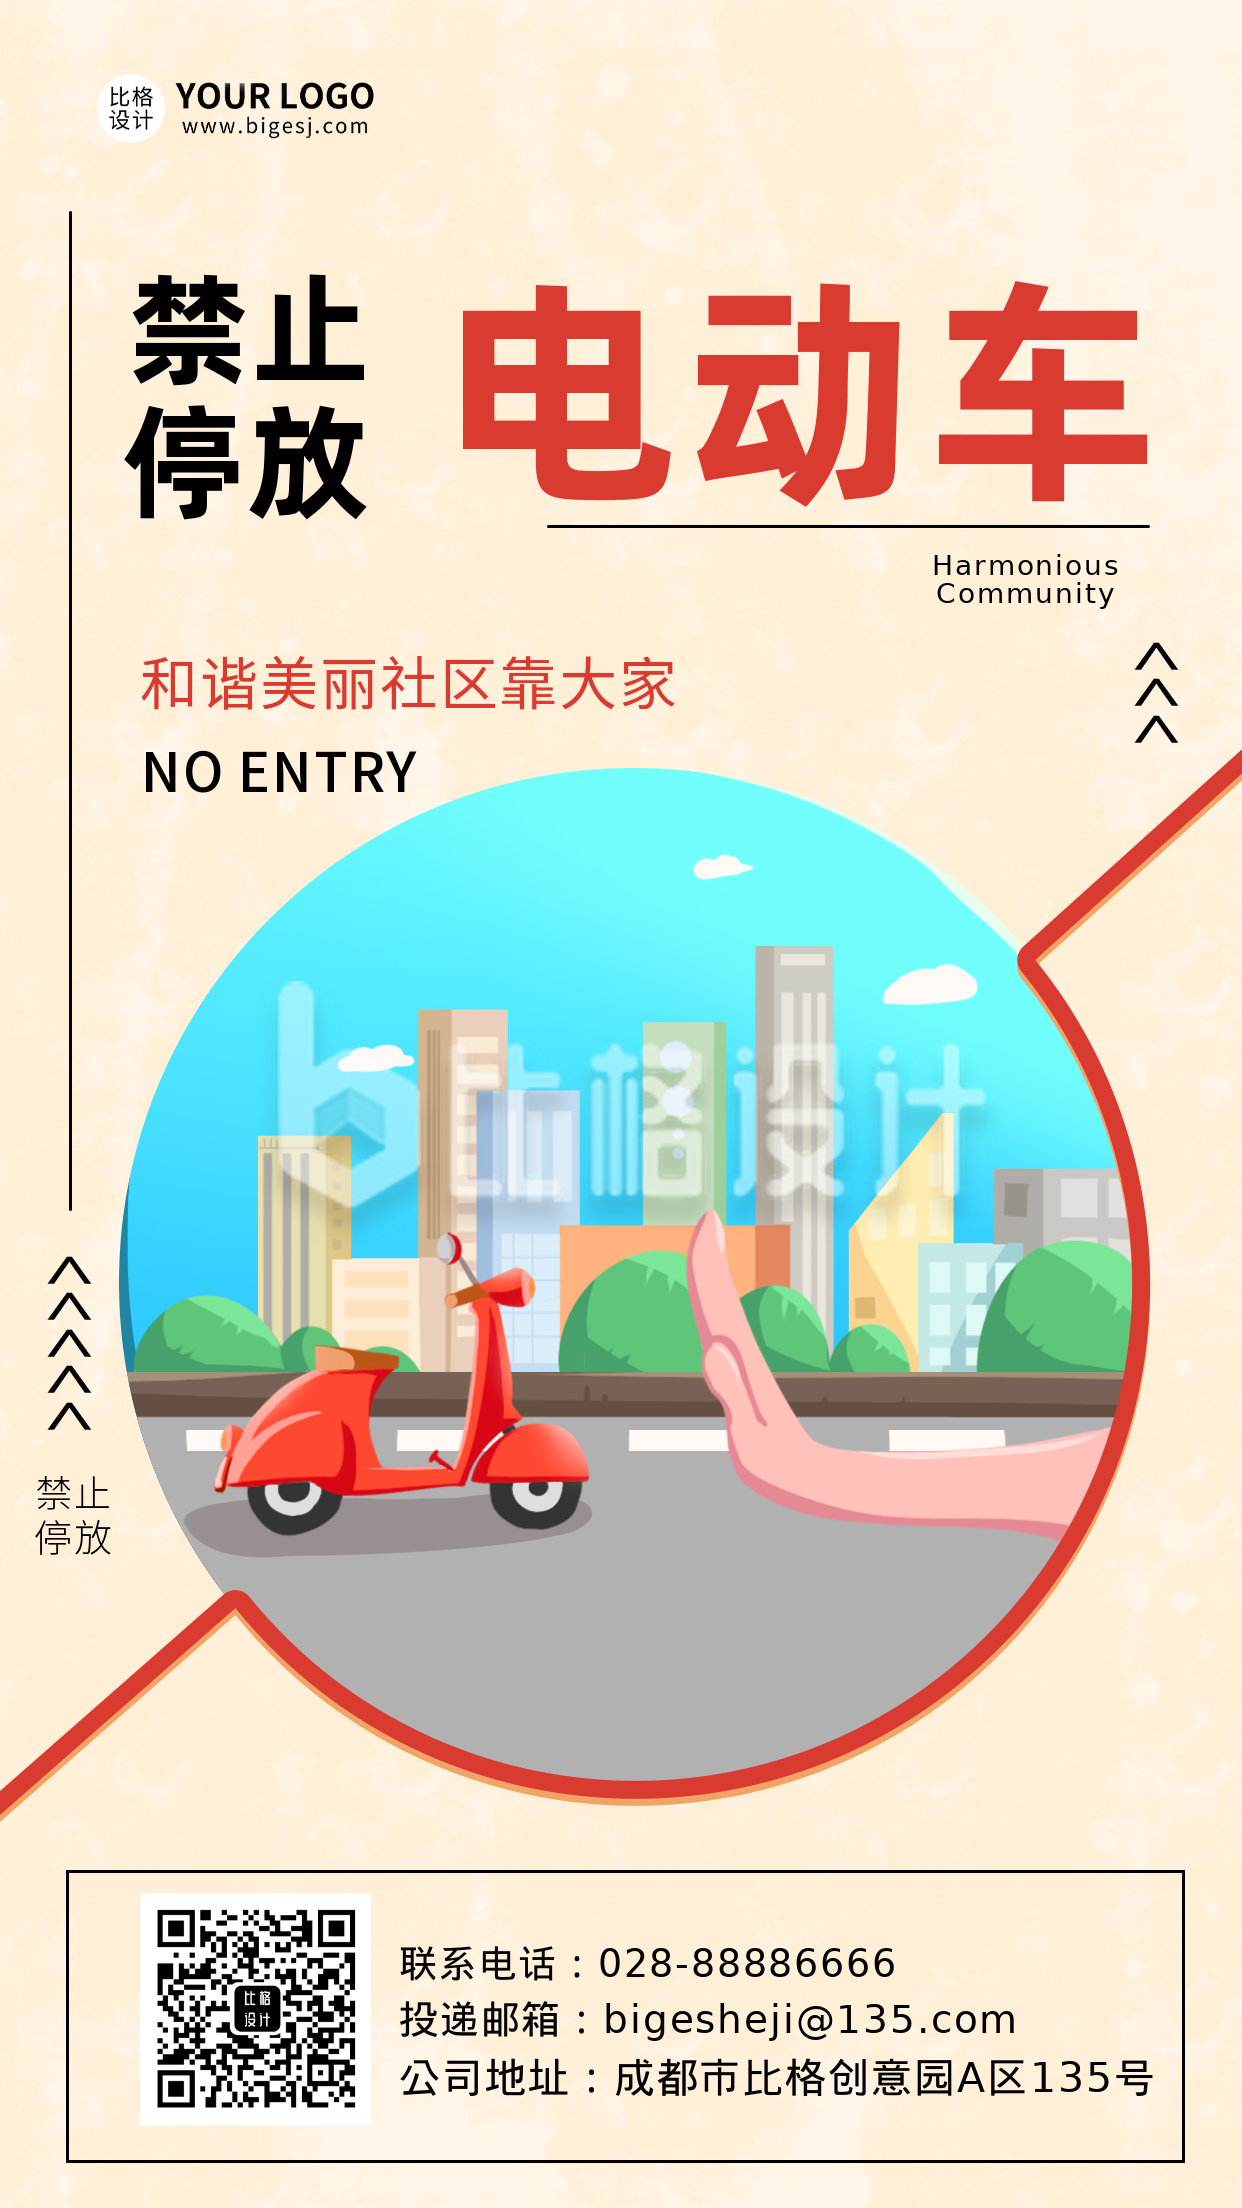 社区倡议电动车禁止停放主题手机海报